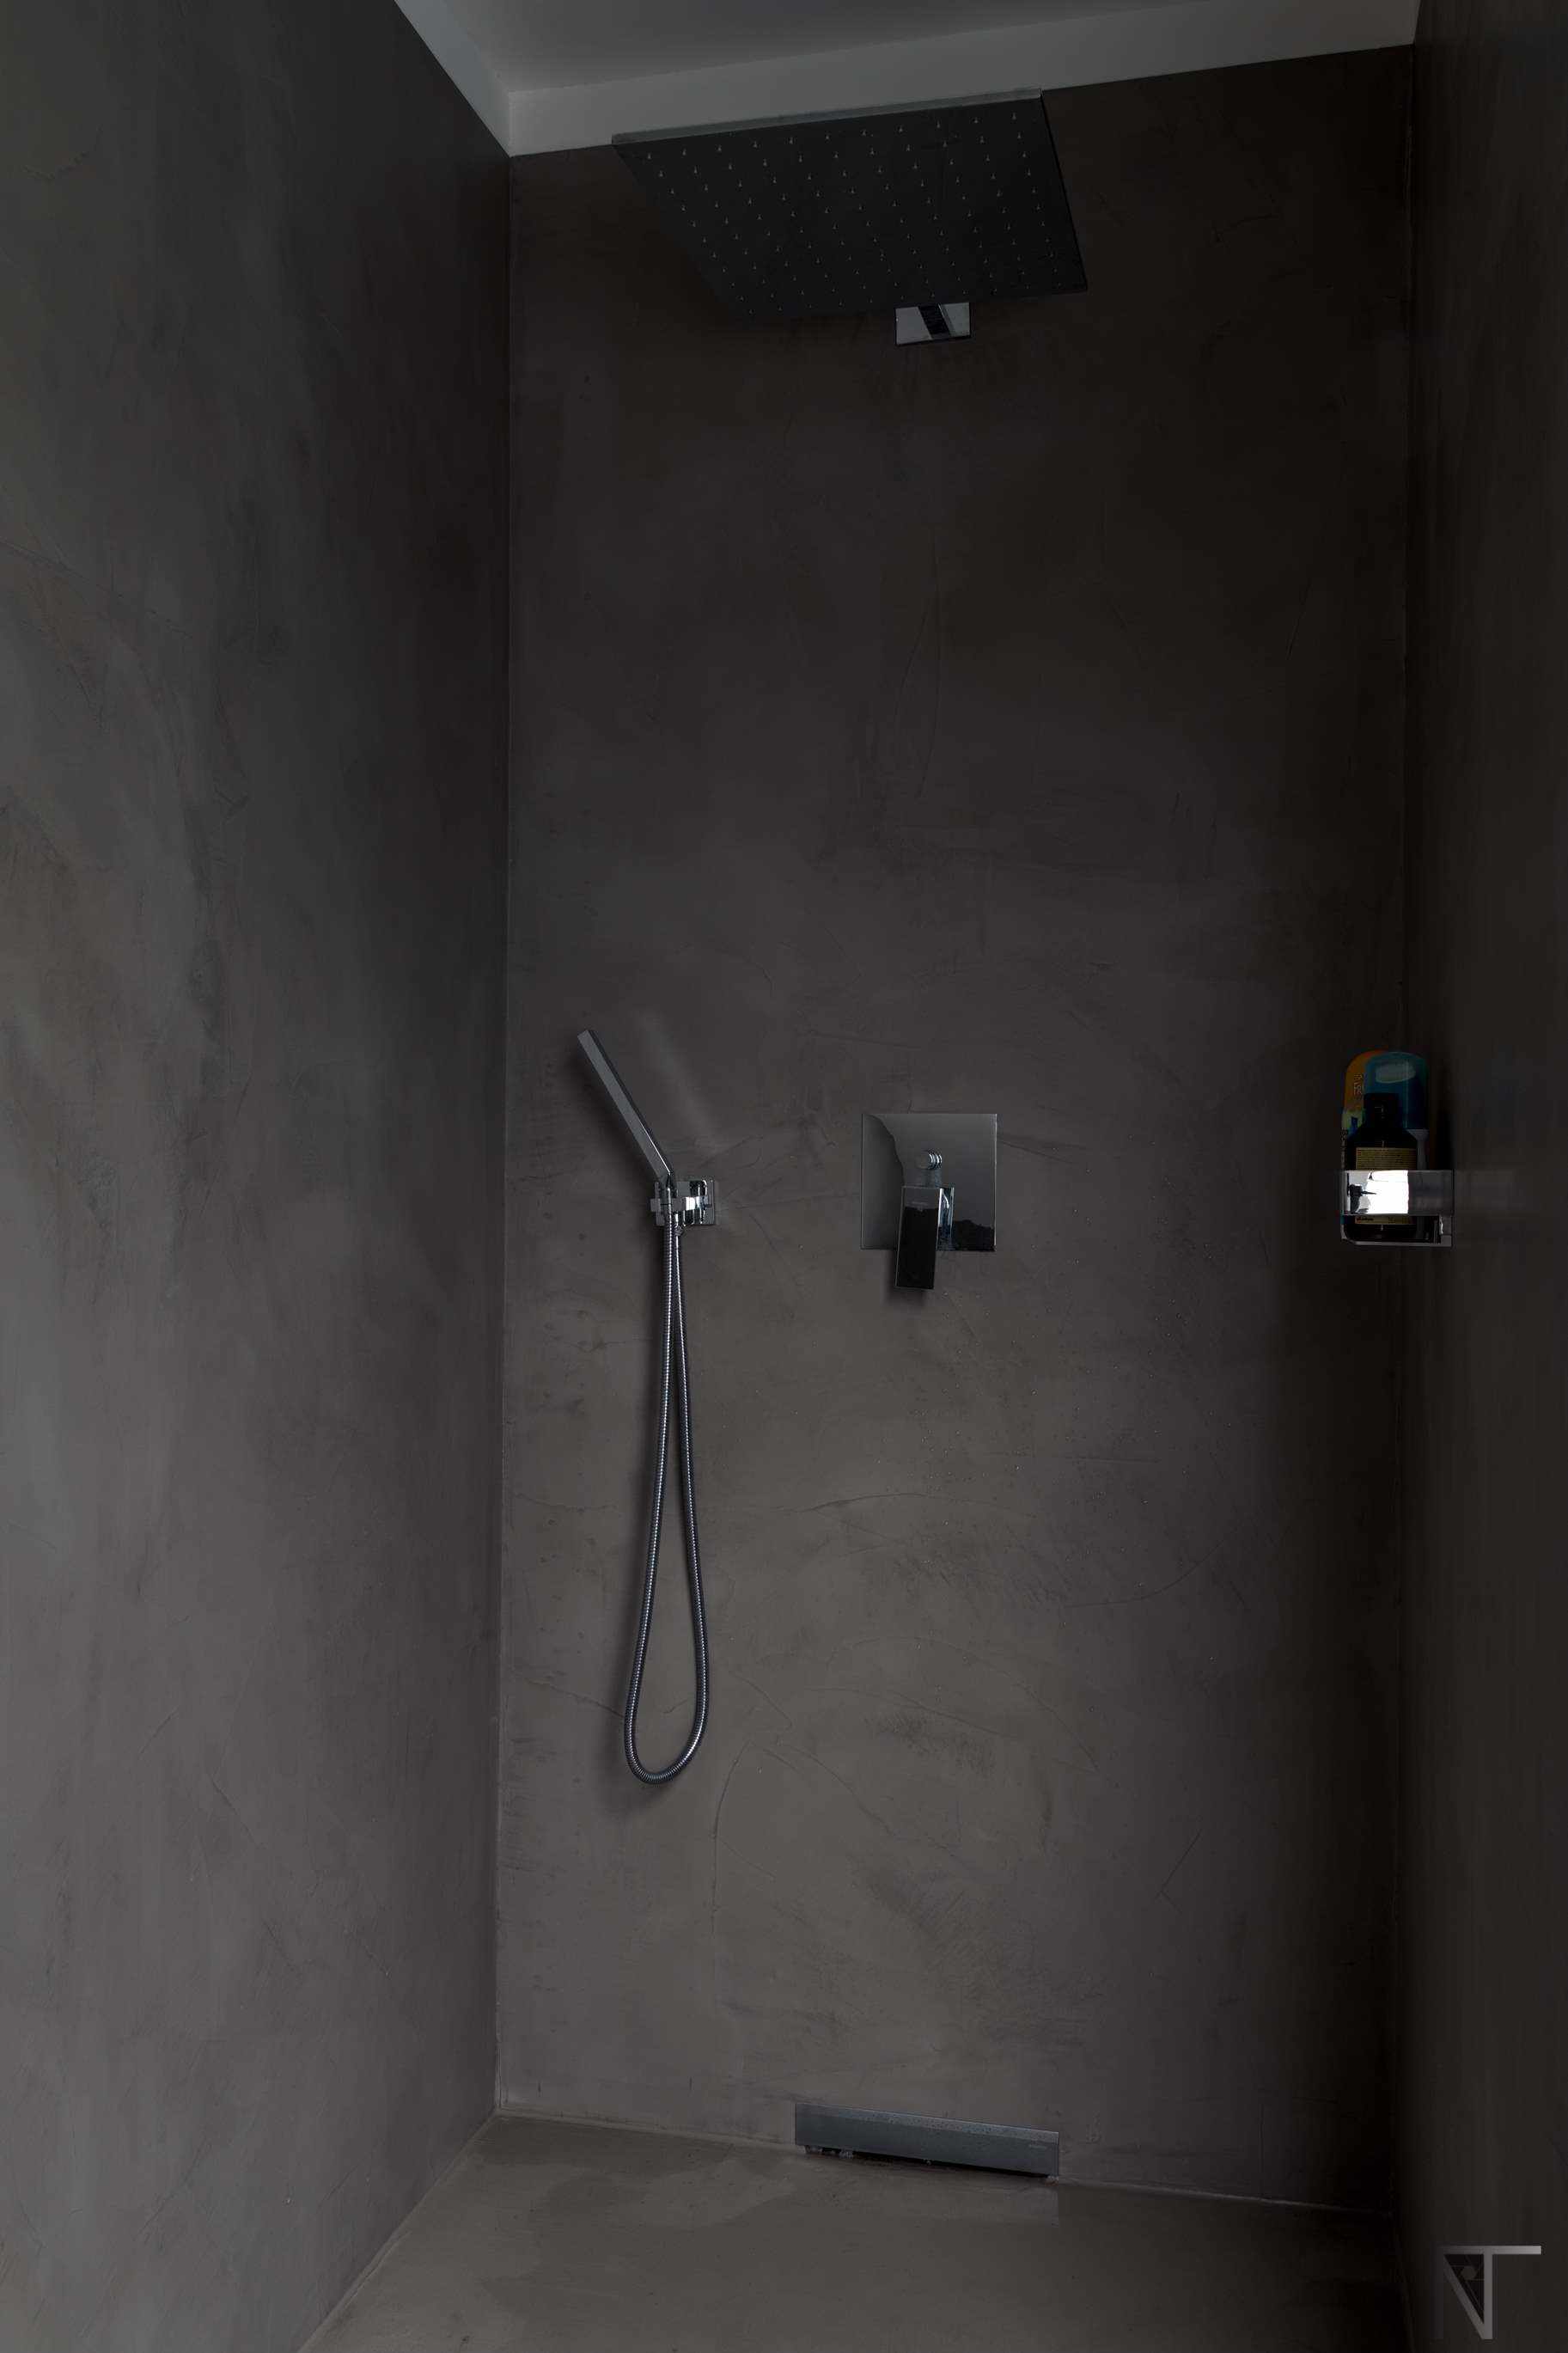 Salle de bain en carrelage rénovée avec du microciment dans la douche